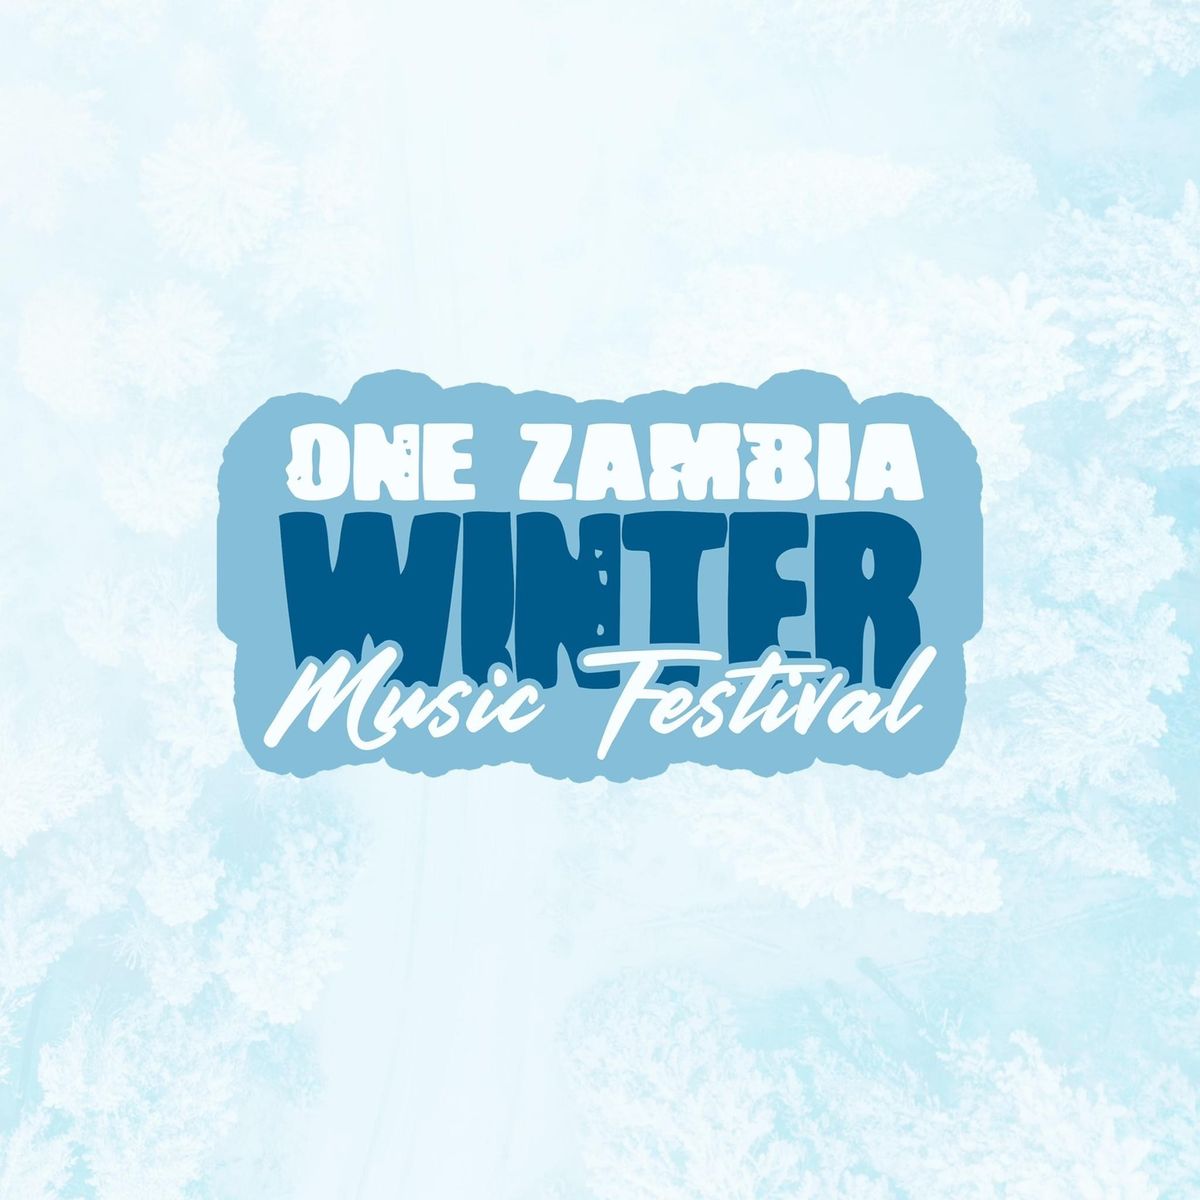 One Zambia Winter Music Festival